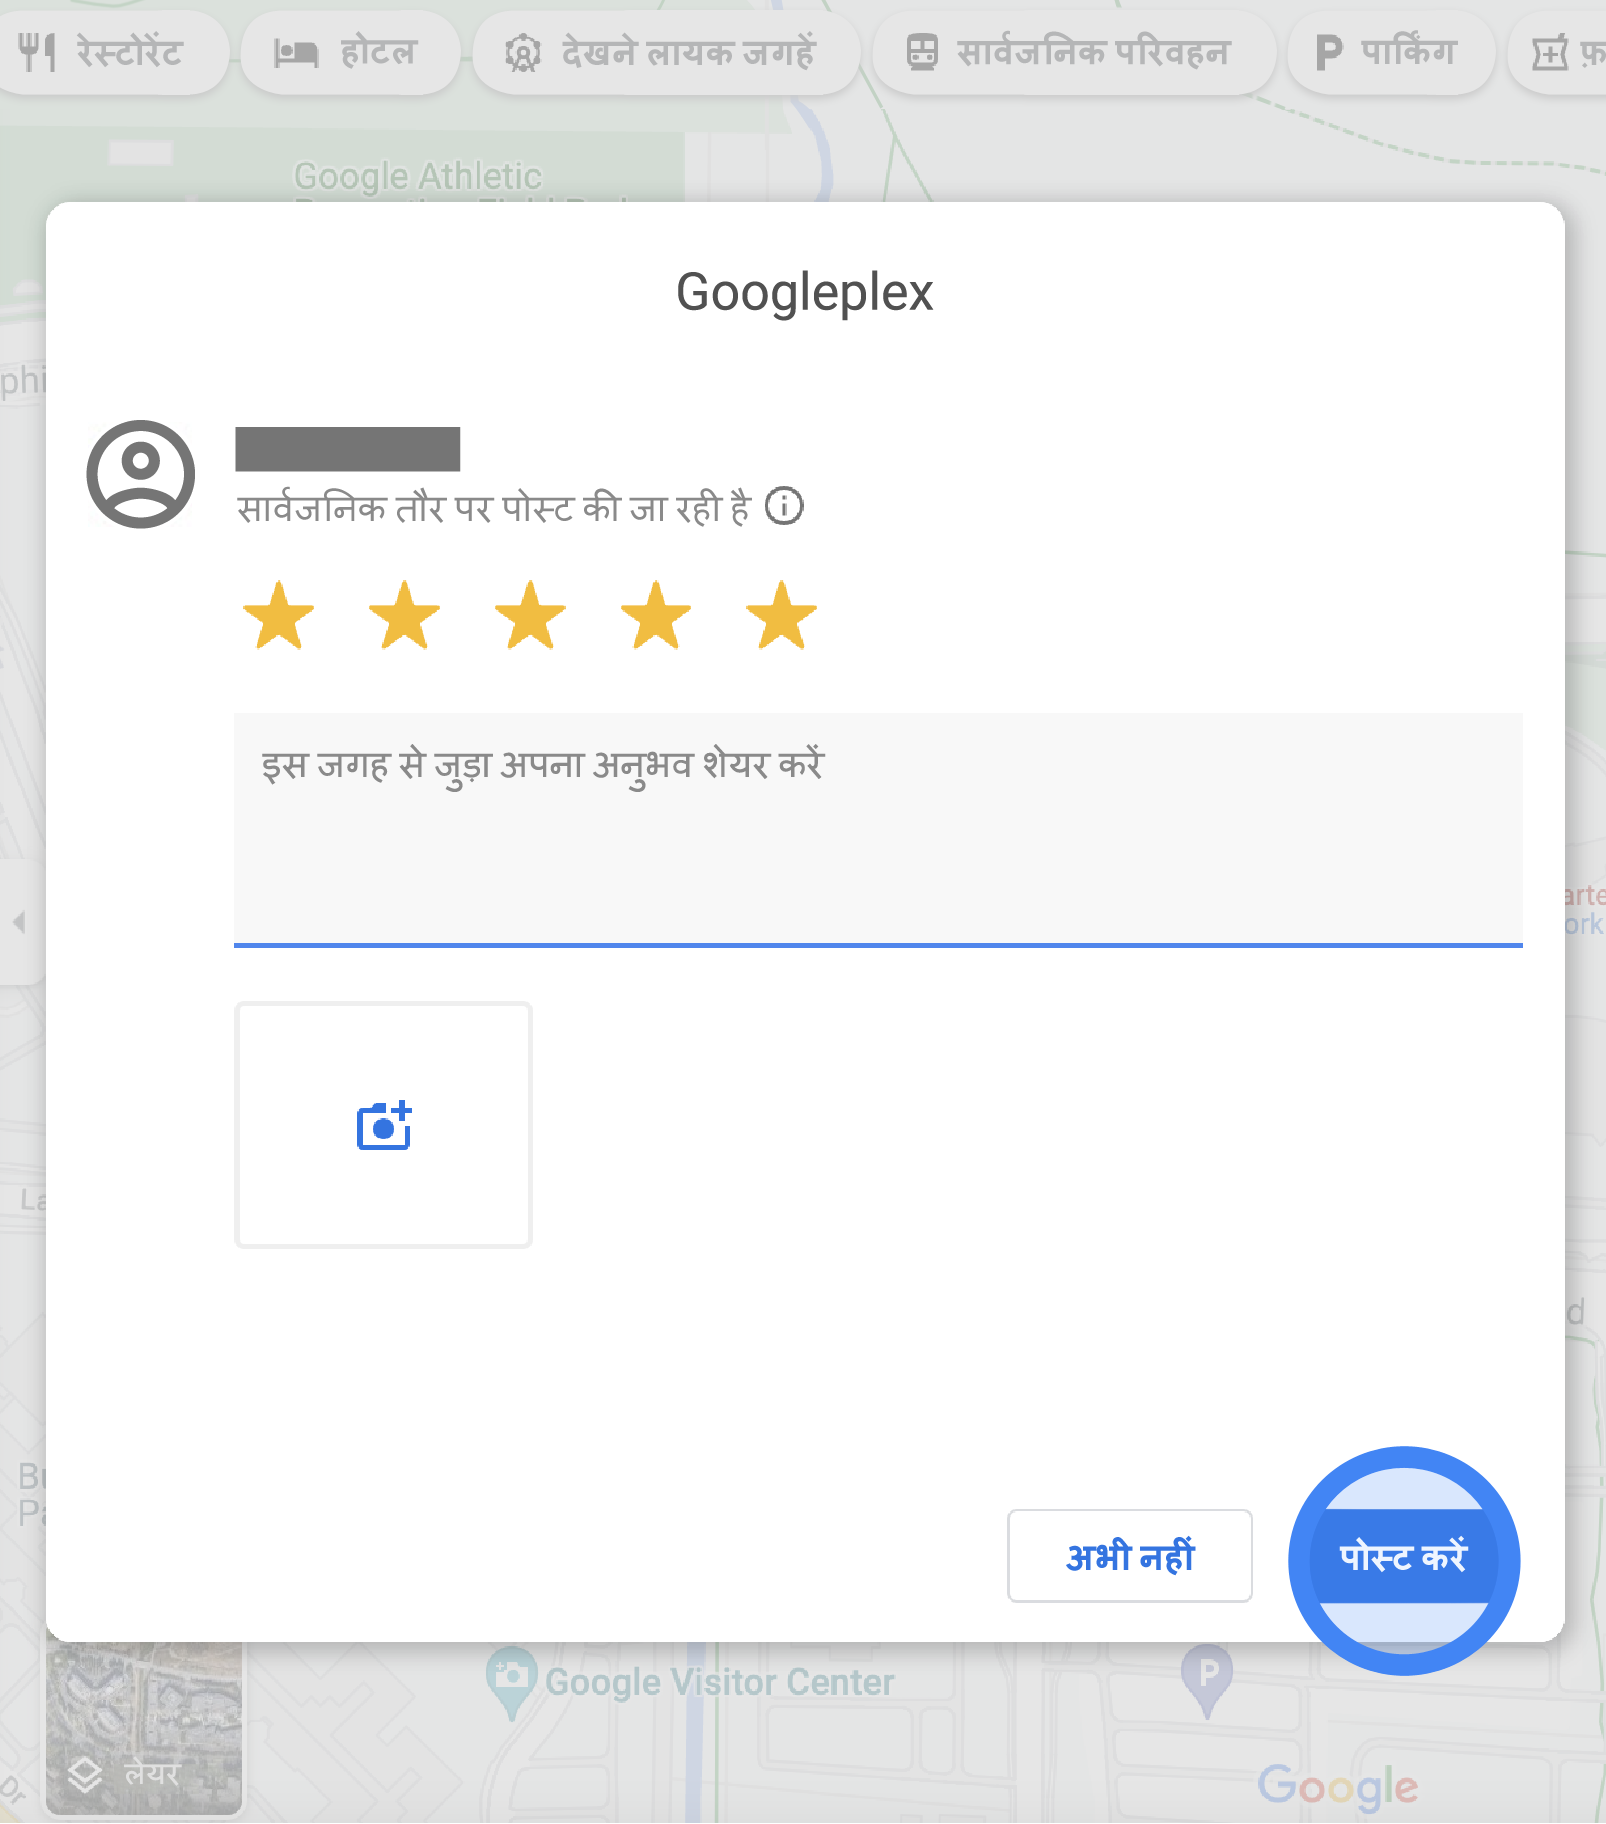 Google Maps पर पॉप-अप विंडो में, Googleplex की समीक्षा लिखने के लिए फ़ॉर्म दिया गया है. इसमें रेटिंग के लिए पांच स्टार चुने गए हैं. समीक्षा लिखने के लिए फ़ील्ड दिया गया है. साथ ही, फ़ोटो अपलोड करने के लिए बटन दिख रहा है, जिस पर कैमरा बना है. पॉप-अप विंडो में नीचे, "रद्द करें" बटन और "पोस्ट करें" बटन दिए गए हैं.